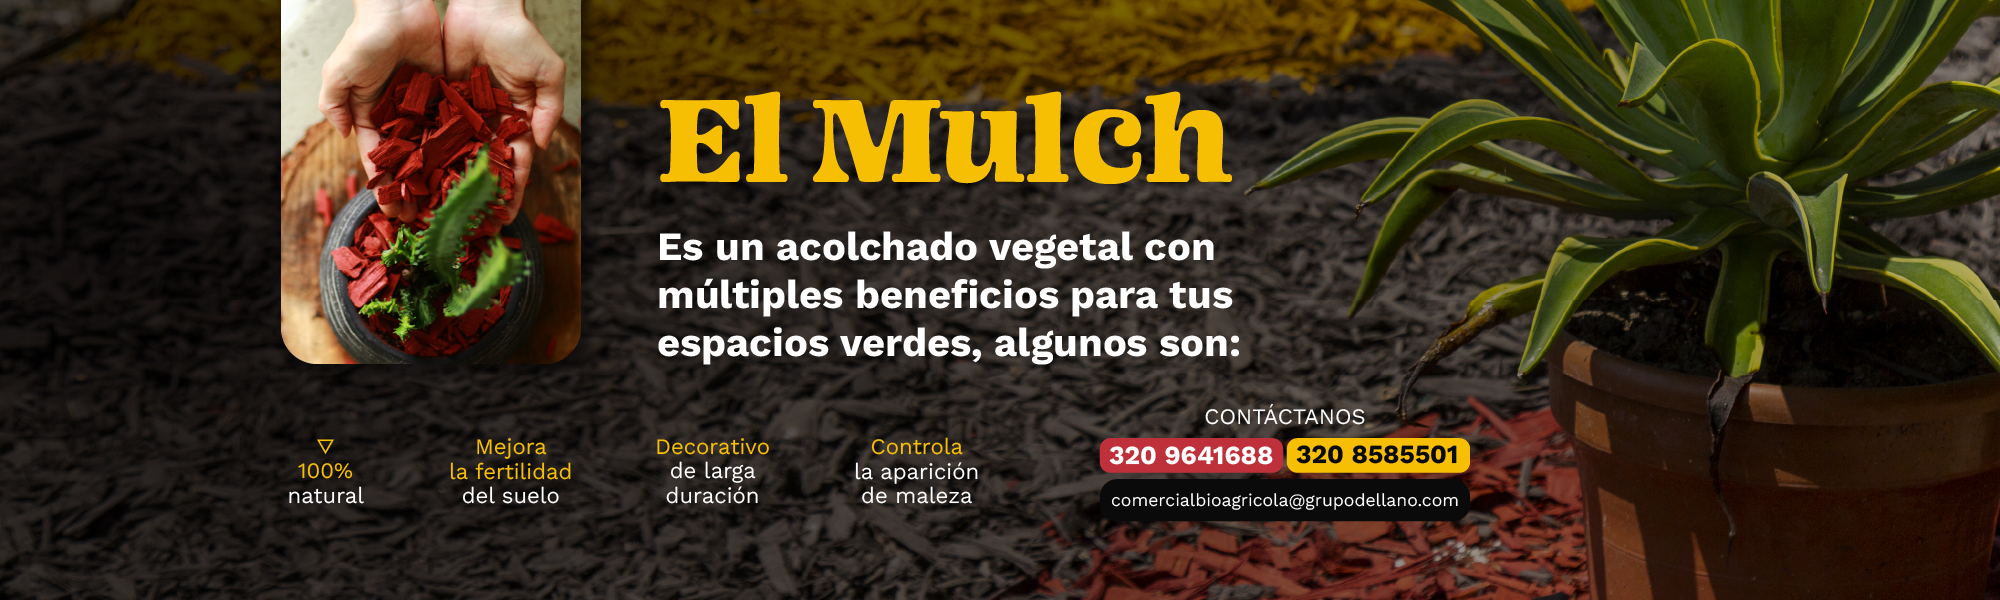 El Mulch es un acolchado vegetal con multiples beneficios para tus plantas